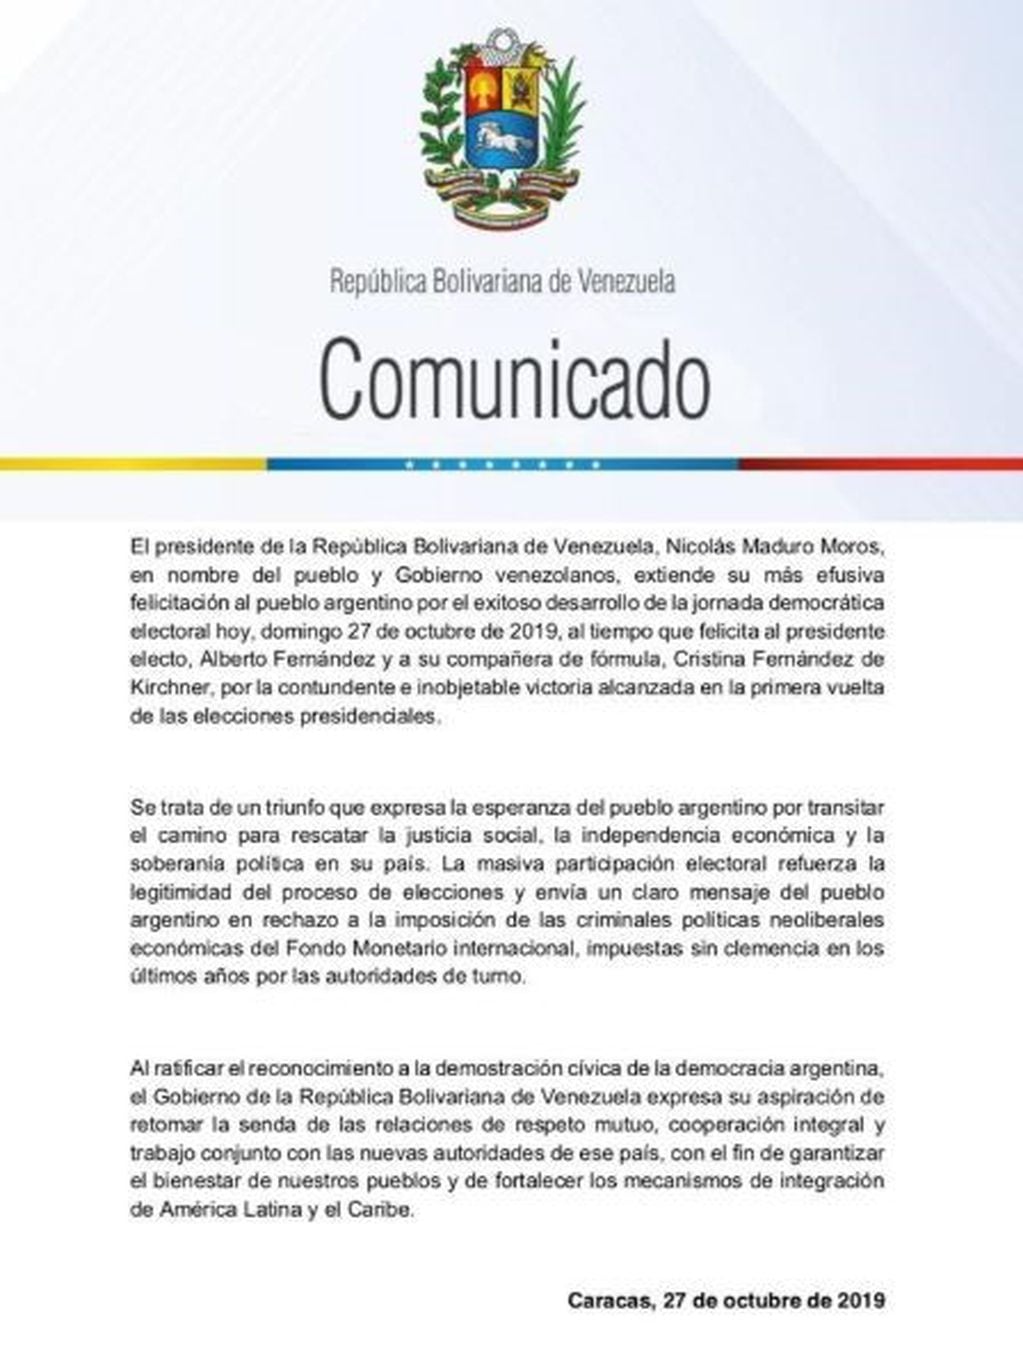 Comunicado del Gobierno de Maduro, tras la victoria del Frente de Todos.